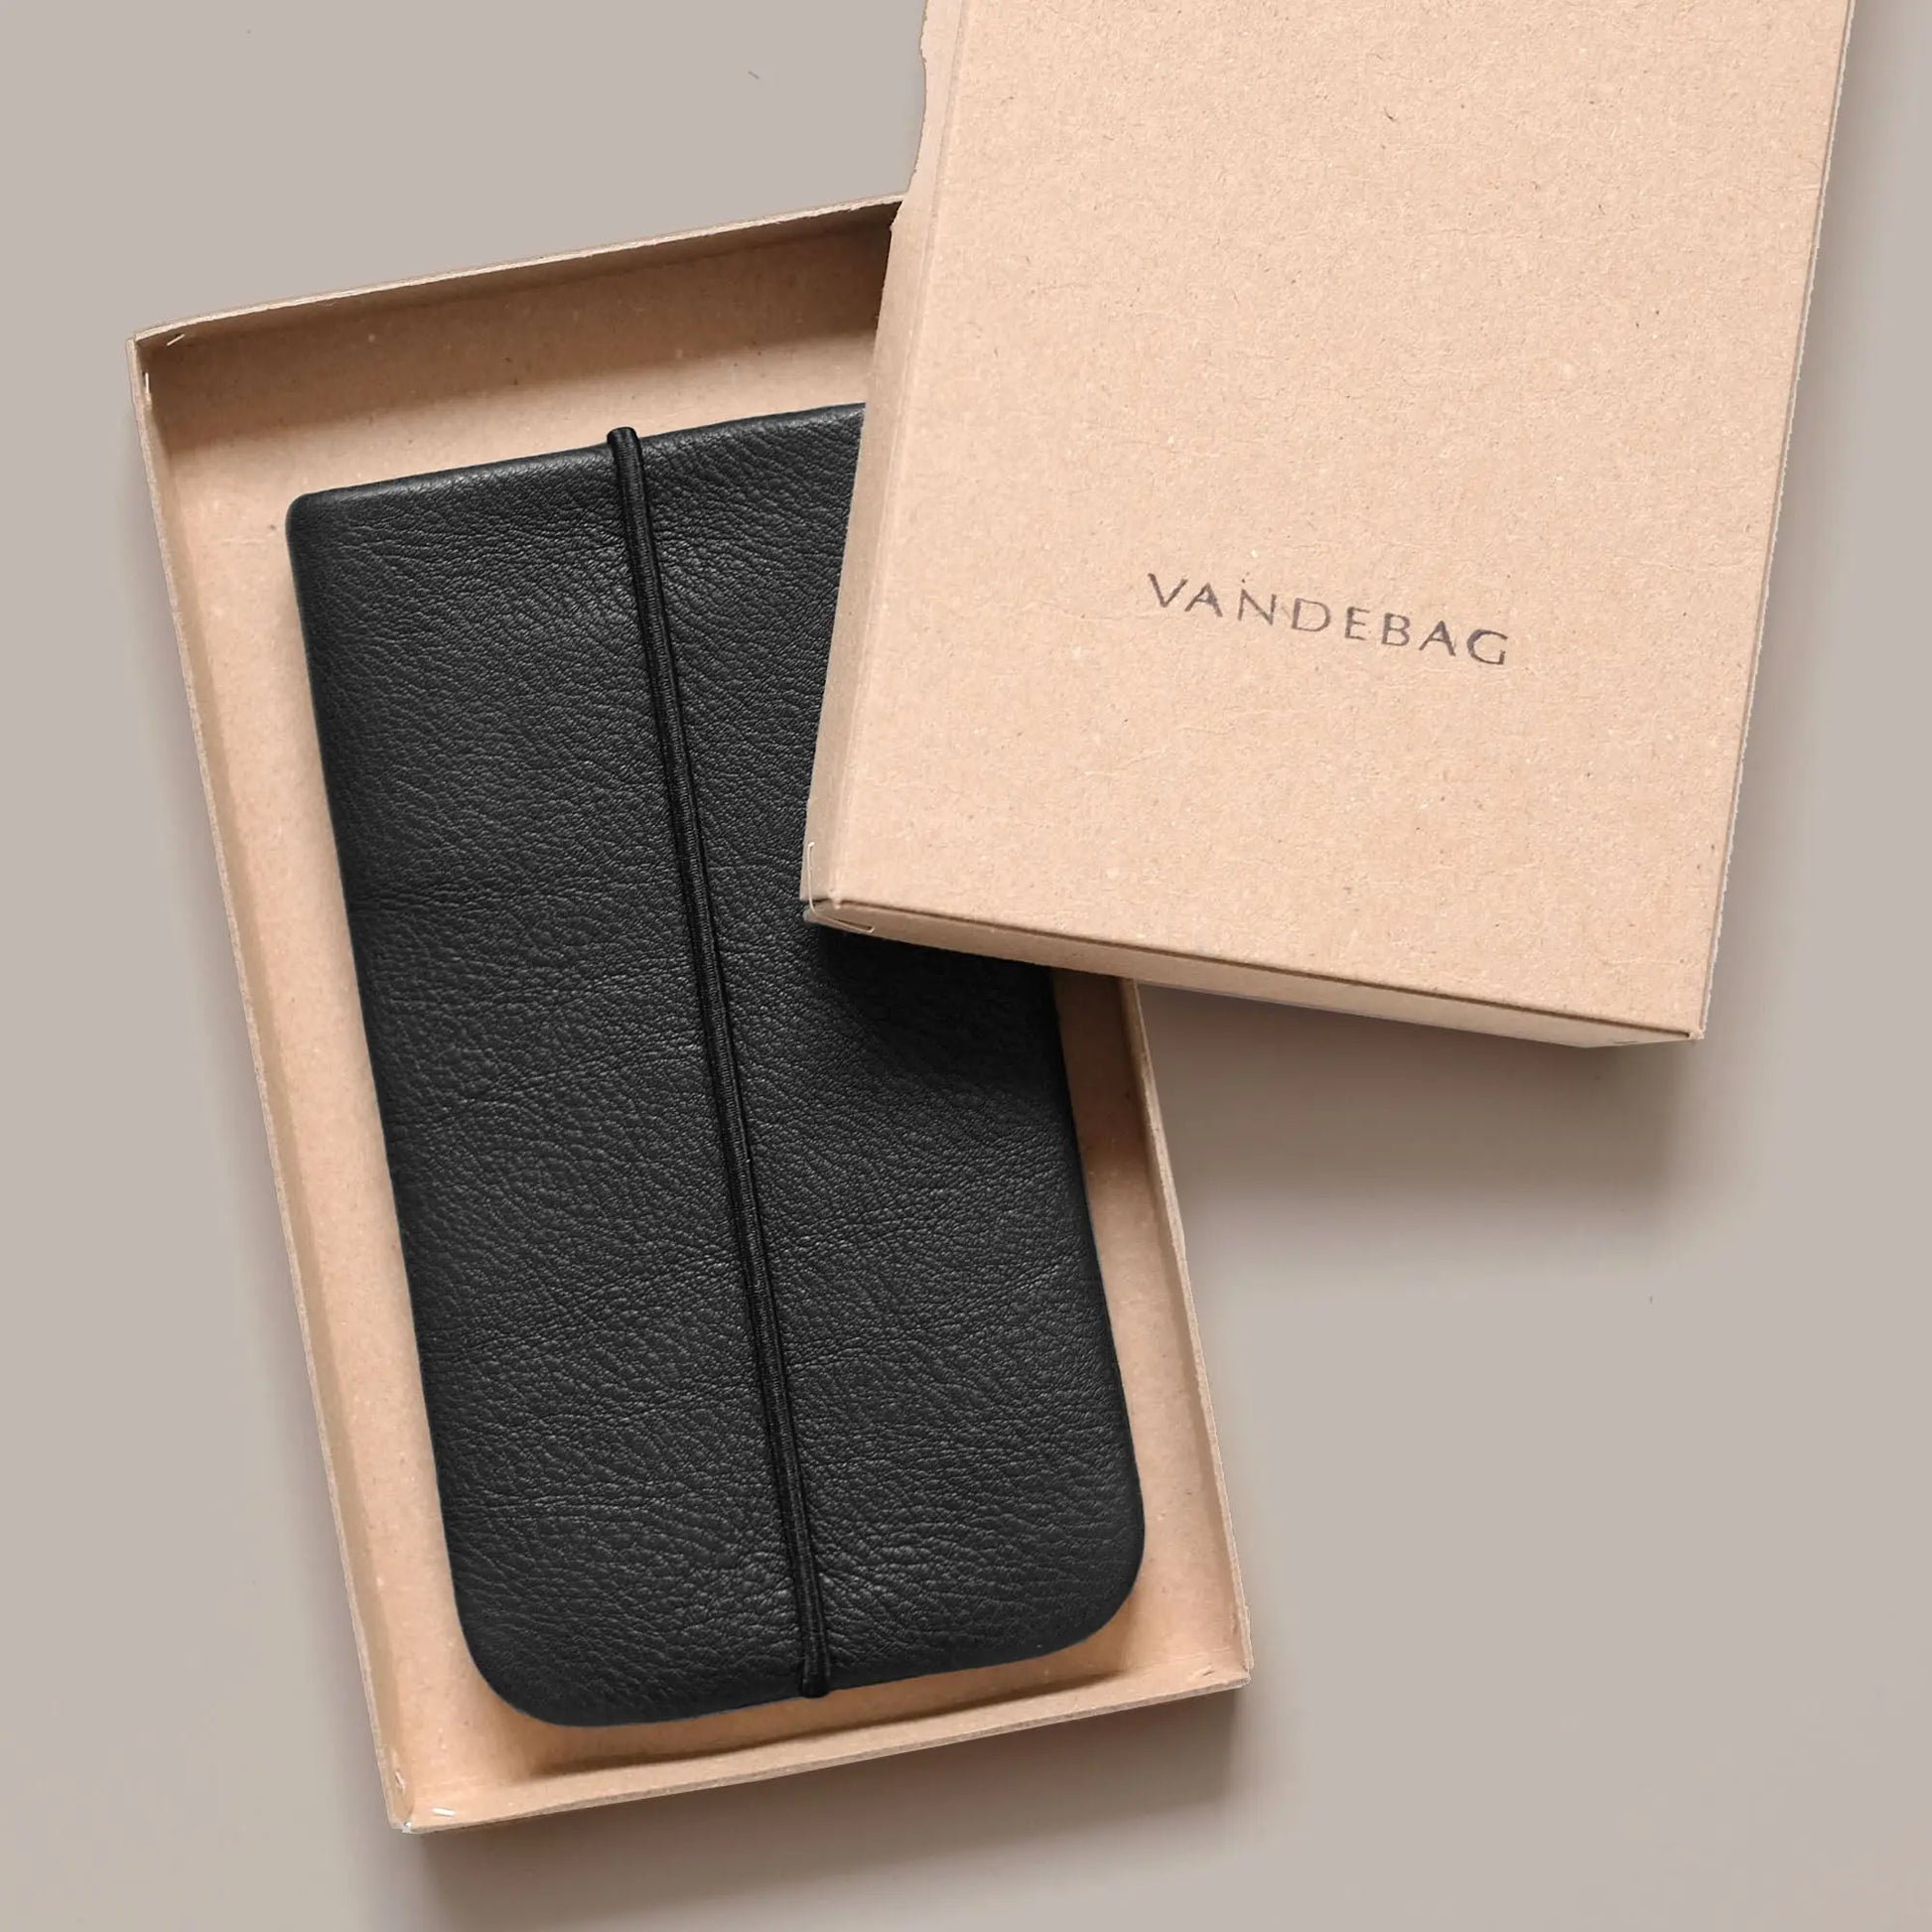 schwarze Lederhülle für iPhones liegt in Geschenkbox